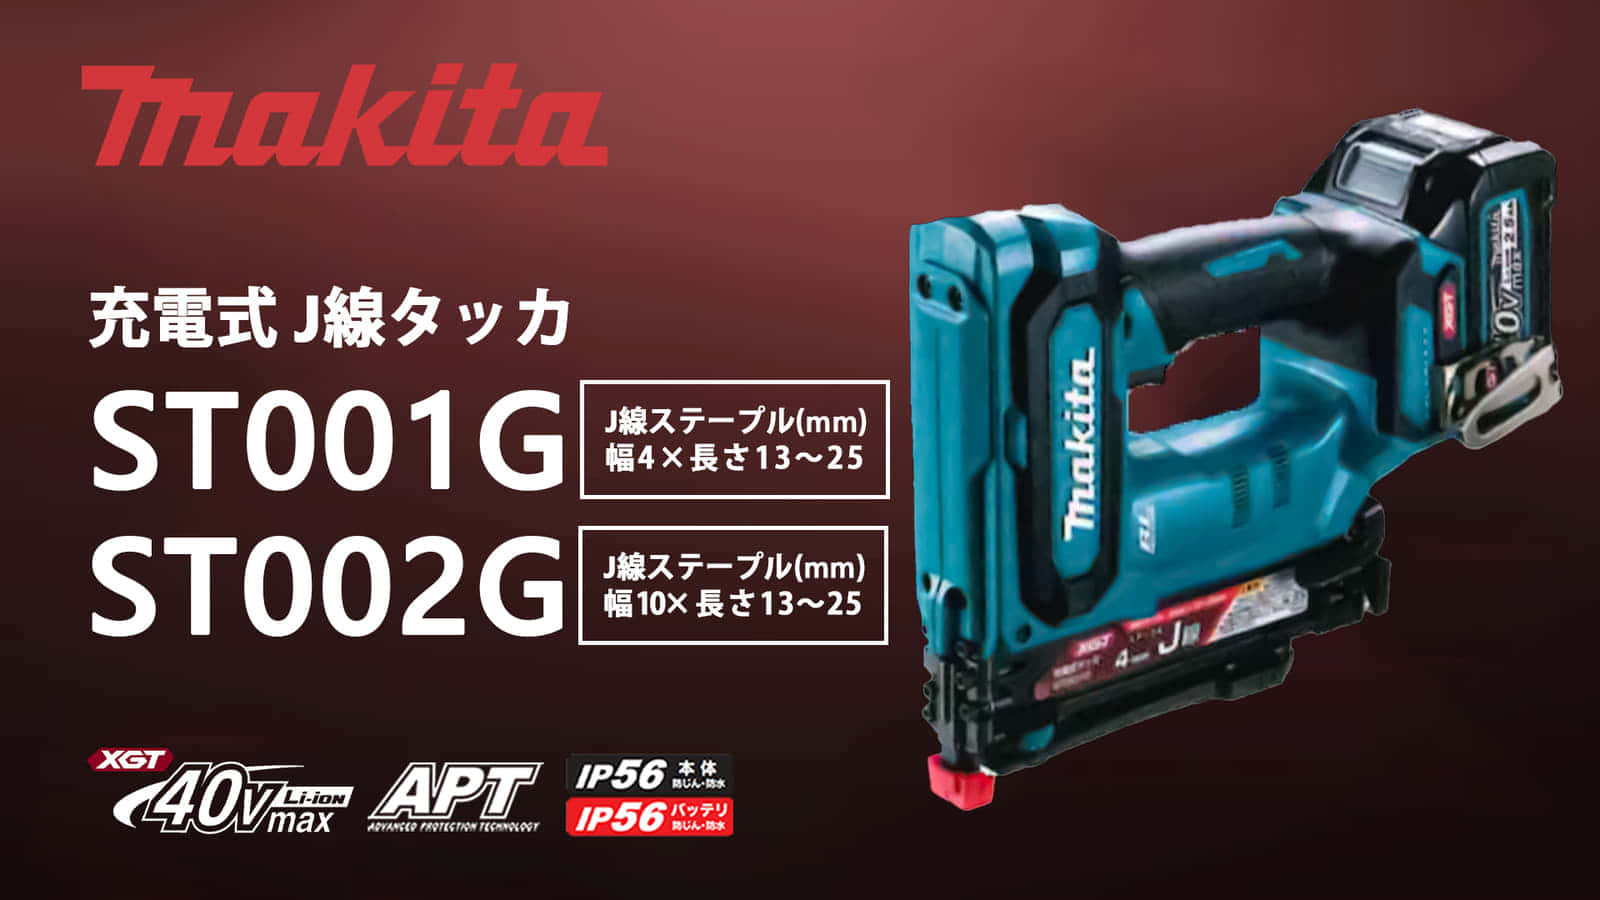 マキタ ST001G 充電式 J線タッカを発売、作動レスポンス向上の40Vmax 